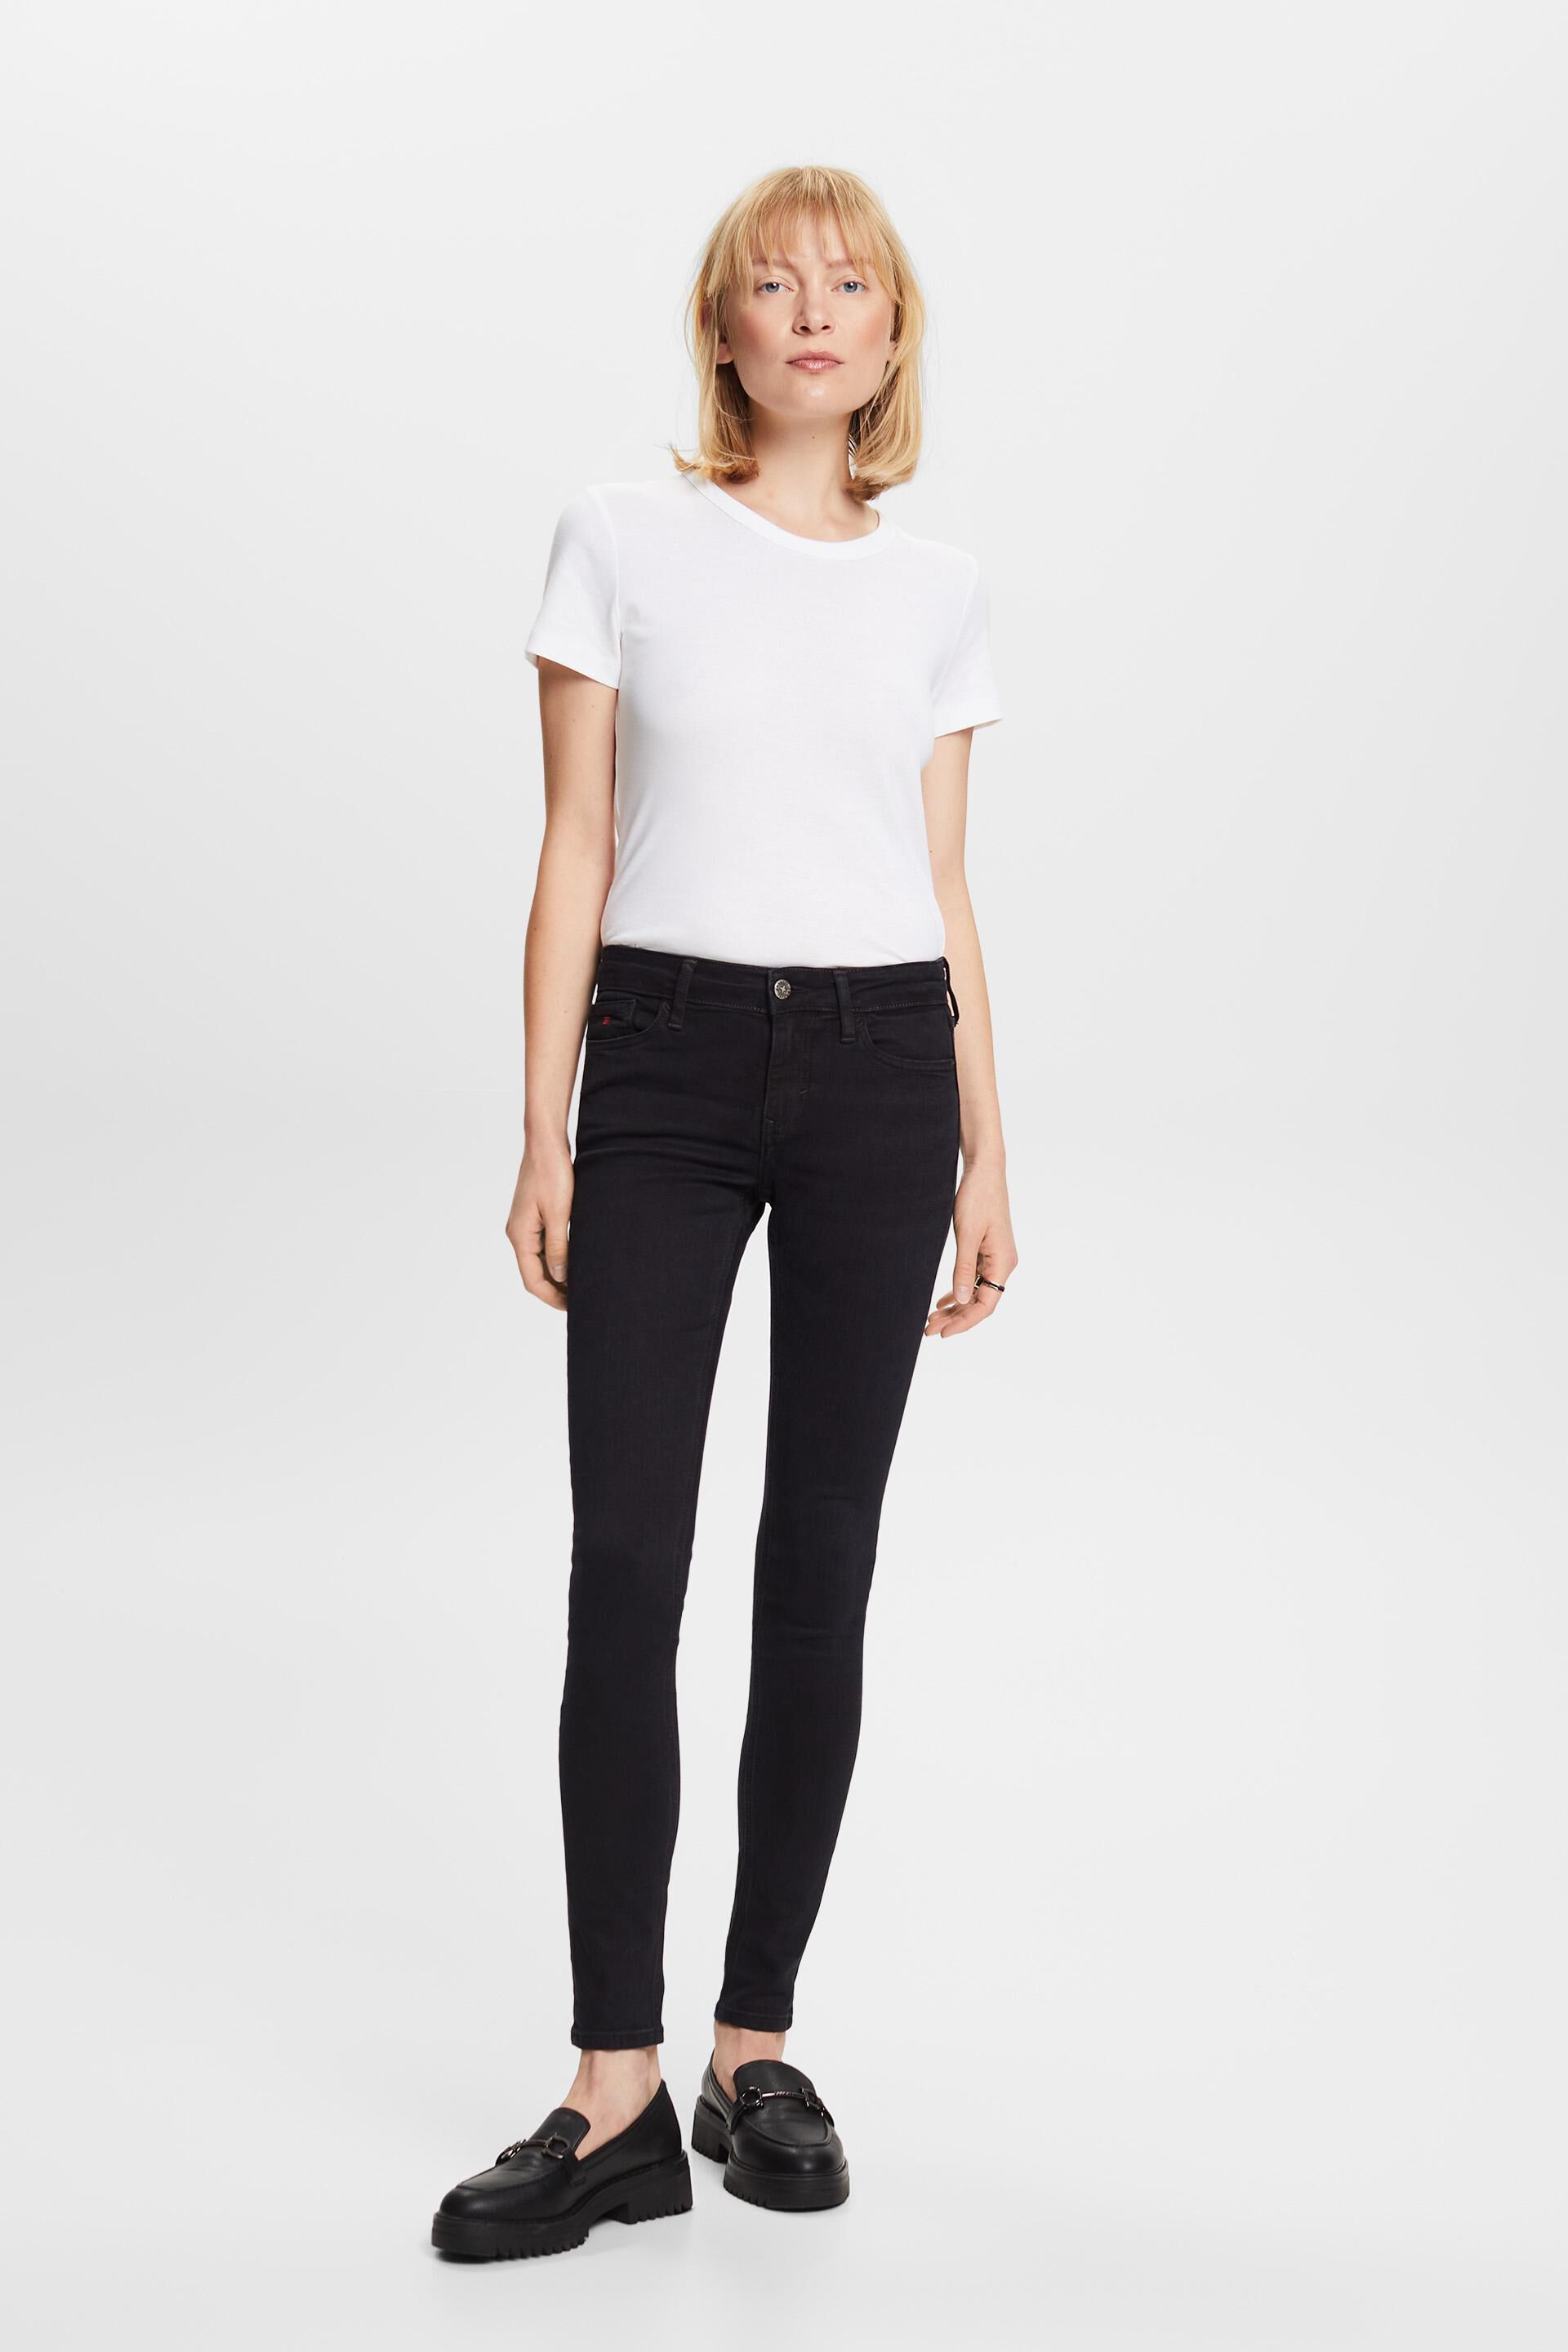 Esprit Premium jeans mid-rise fit skinny